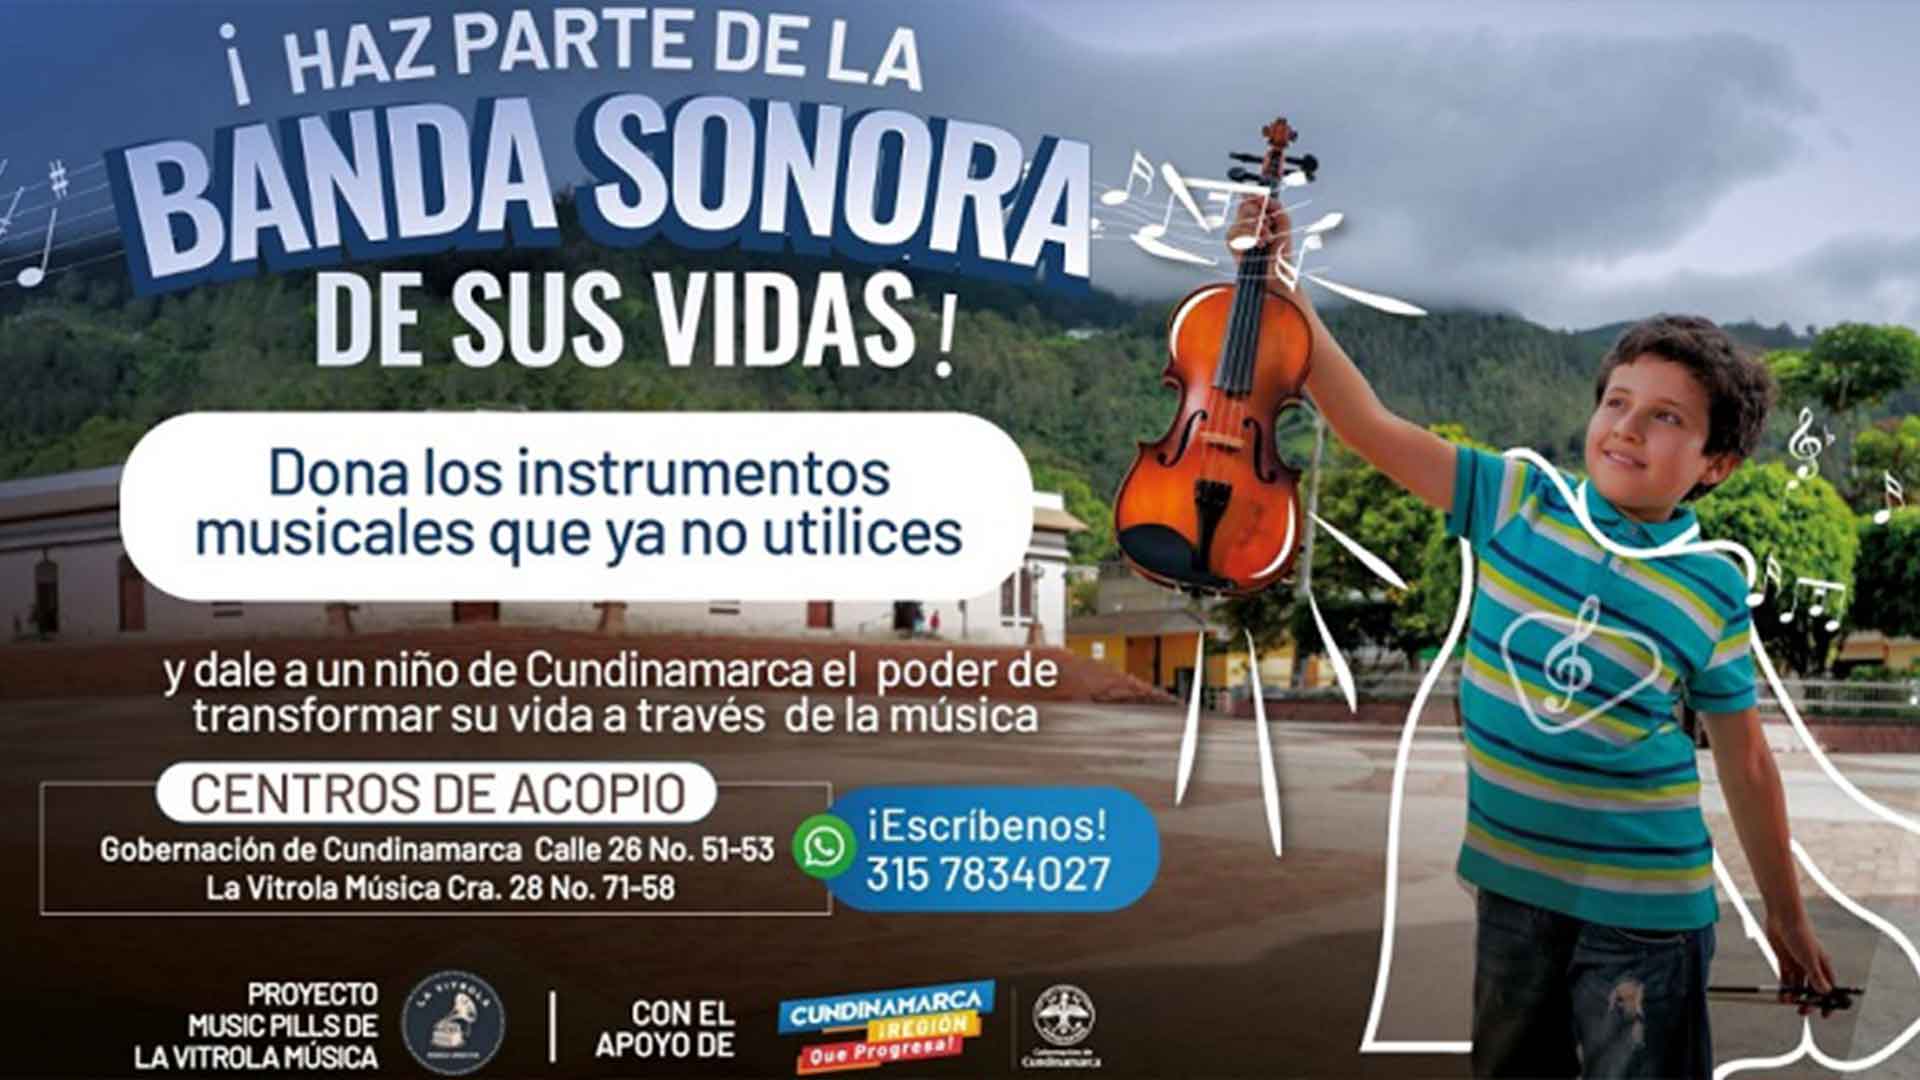 Cundinamarca se une a la campaÃ±a â€œHaz parte de la banda sonora de sus vidasâ€�, que busca la donaciÃ³n de instrumentos musicales a niÃ±os.